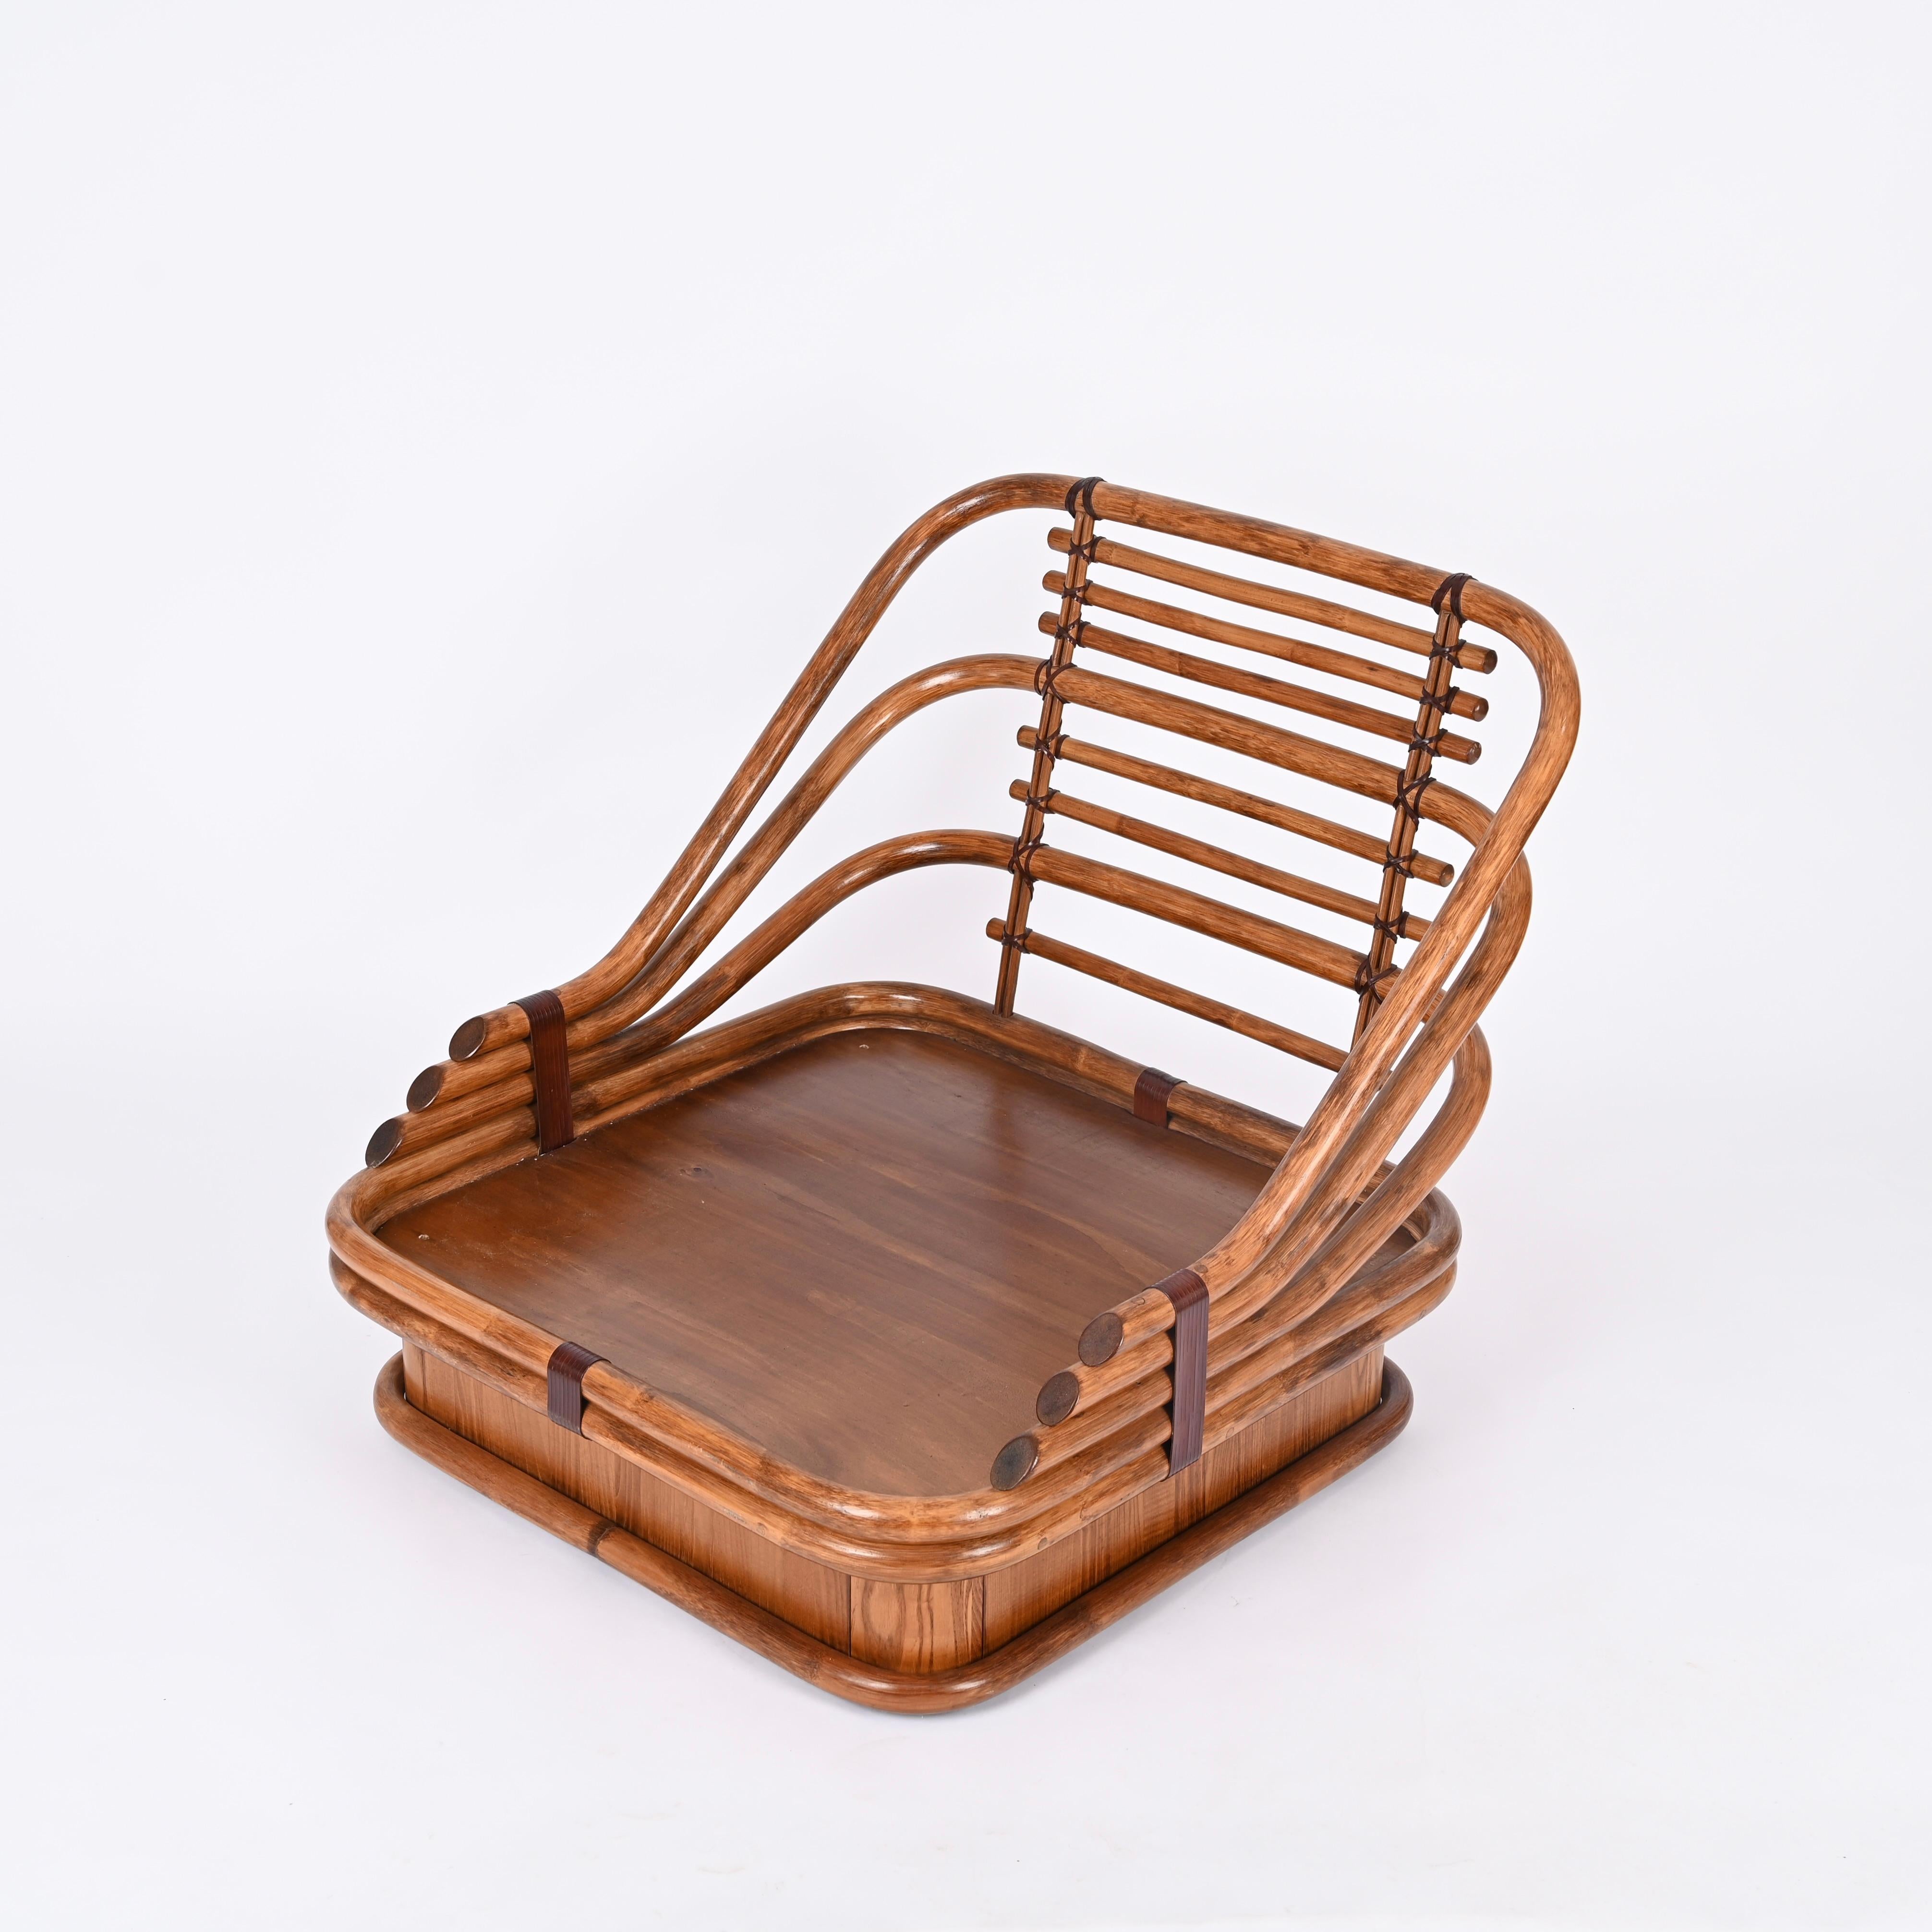 Spectaculaire fauteuil organique du milieu du siècle, entièrement réalisé en bambou, cuir et bois de châtaignier. Cet élégant fauteuil a été fabriqué en Italie dans les années 1960, clairement dans le style de Gabriella Crespi.

Ce fauteuil est